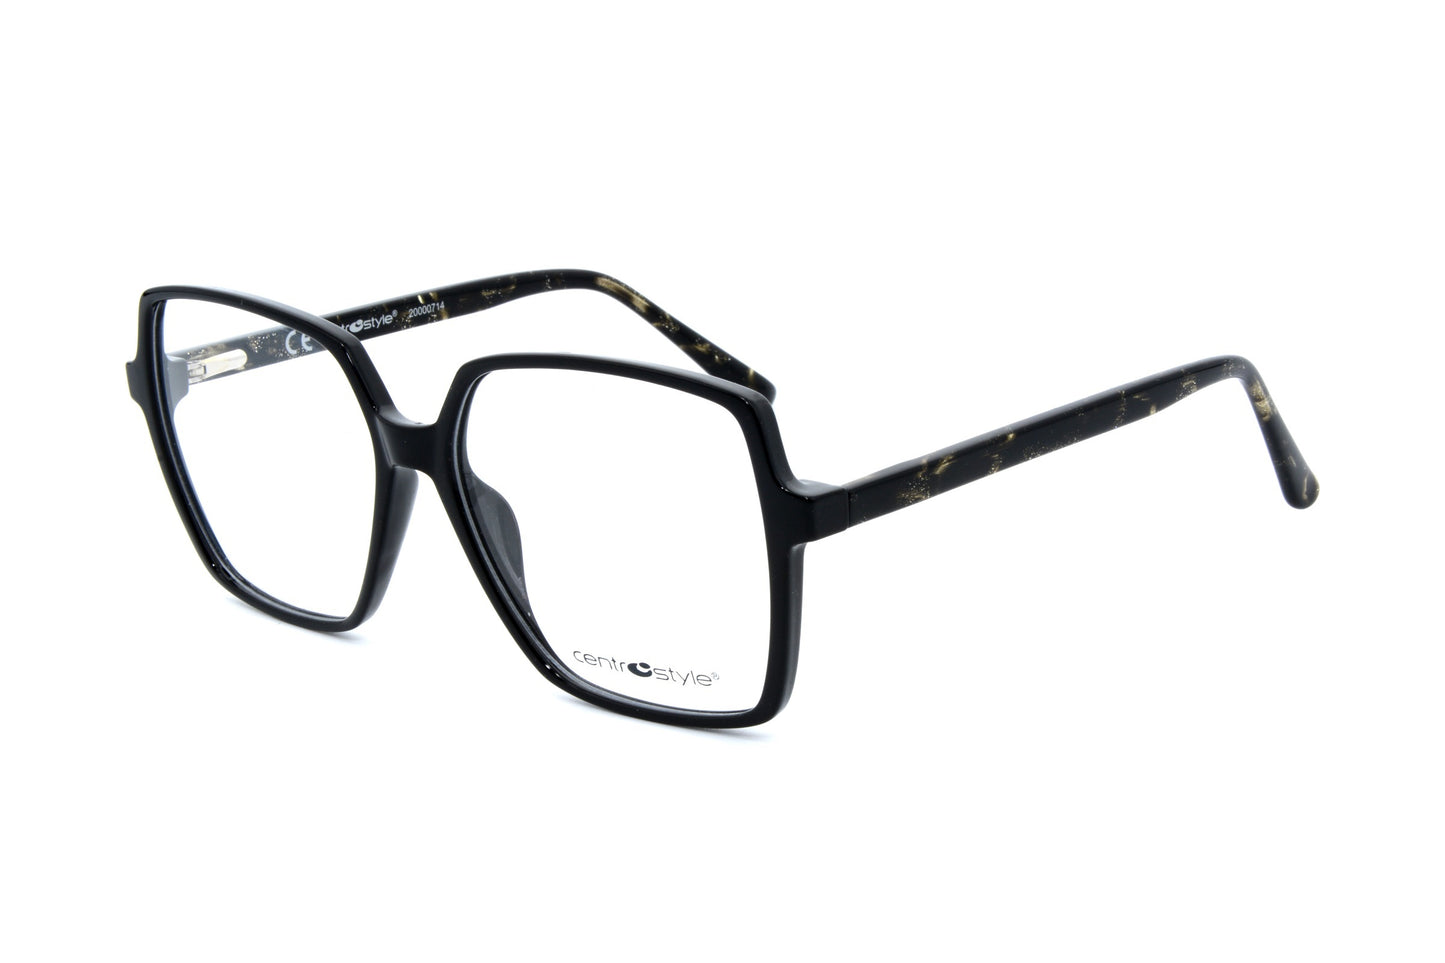 Centrostyle eyewear F027855050000 - Optics Trading